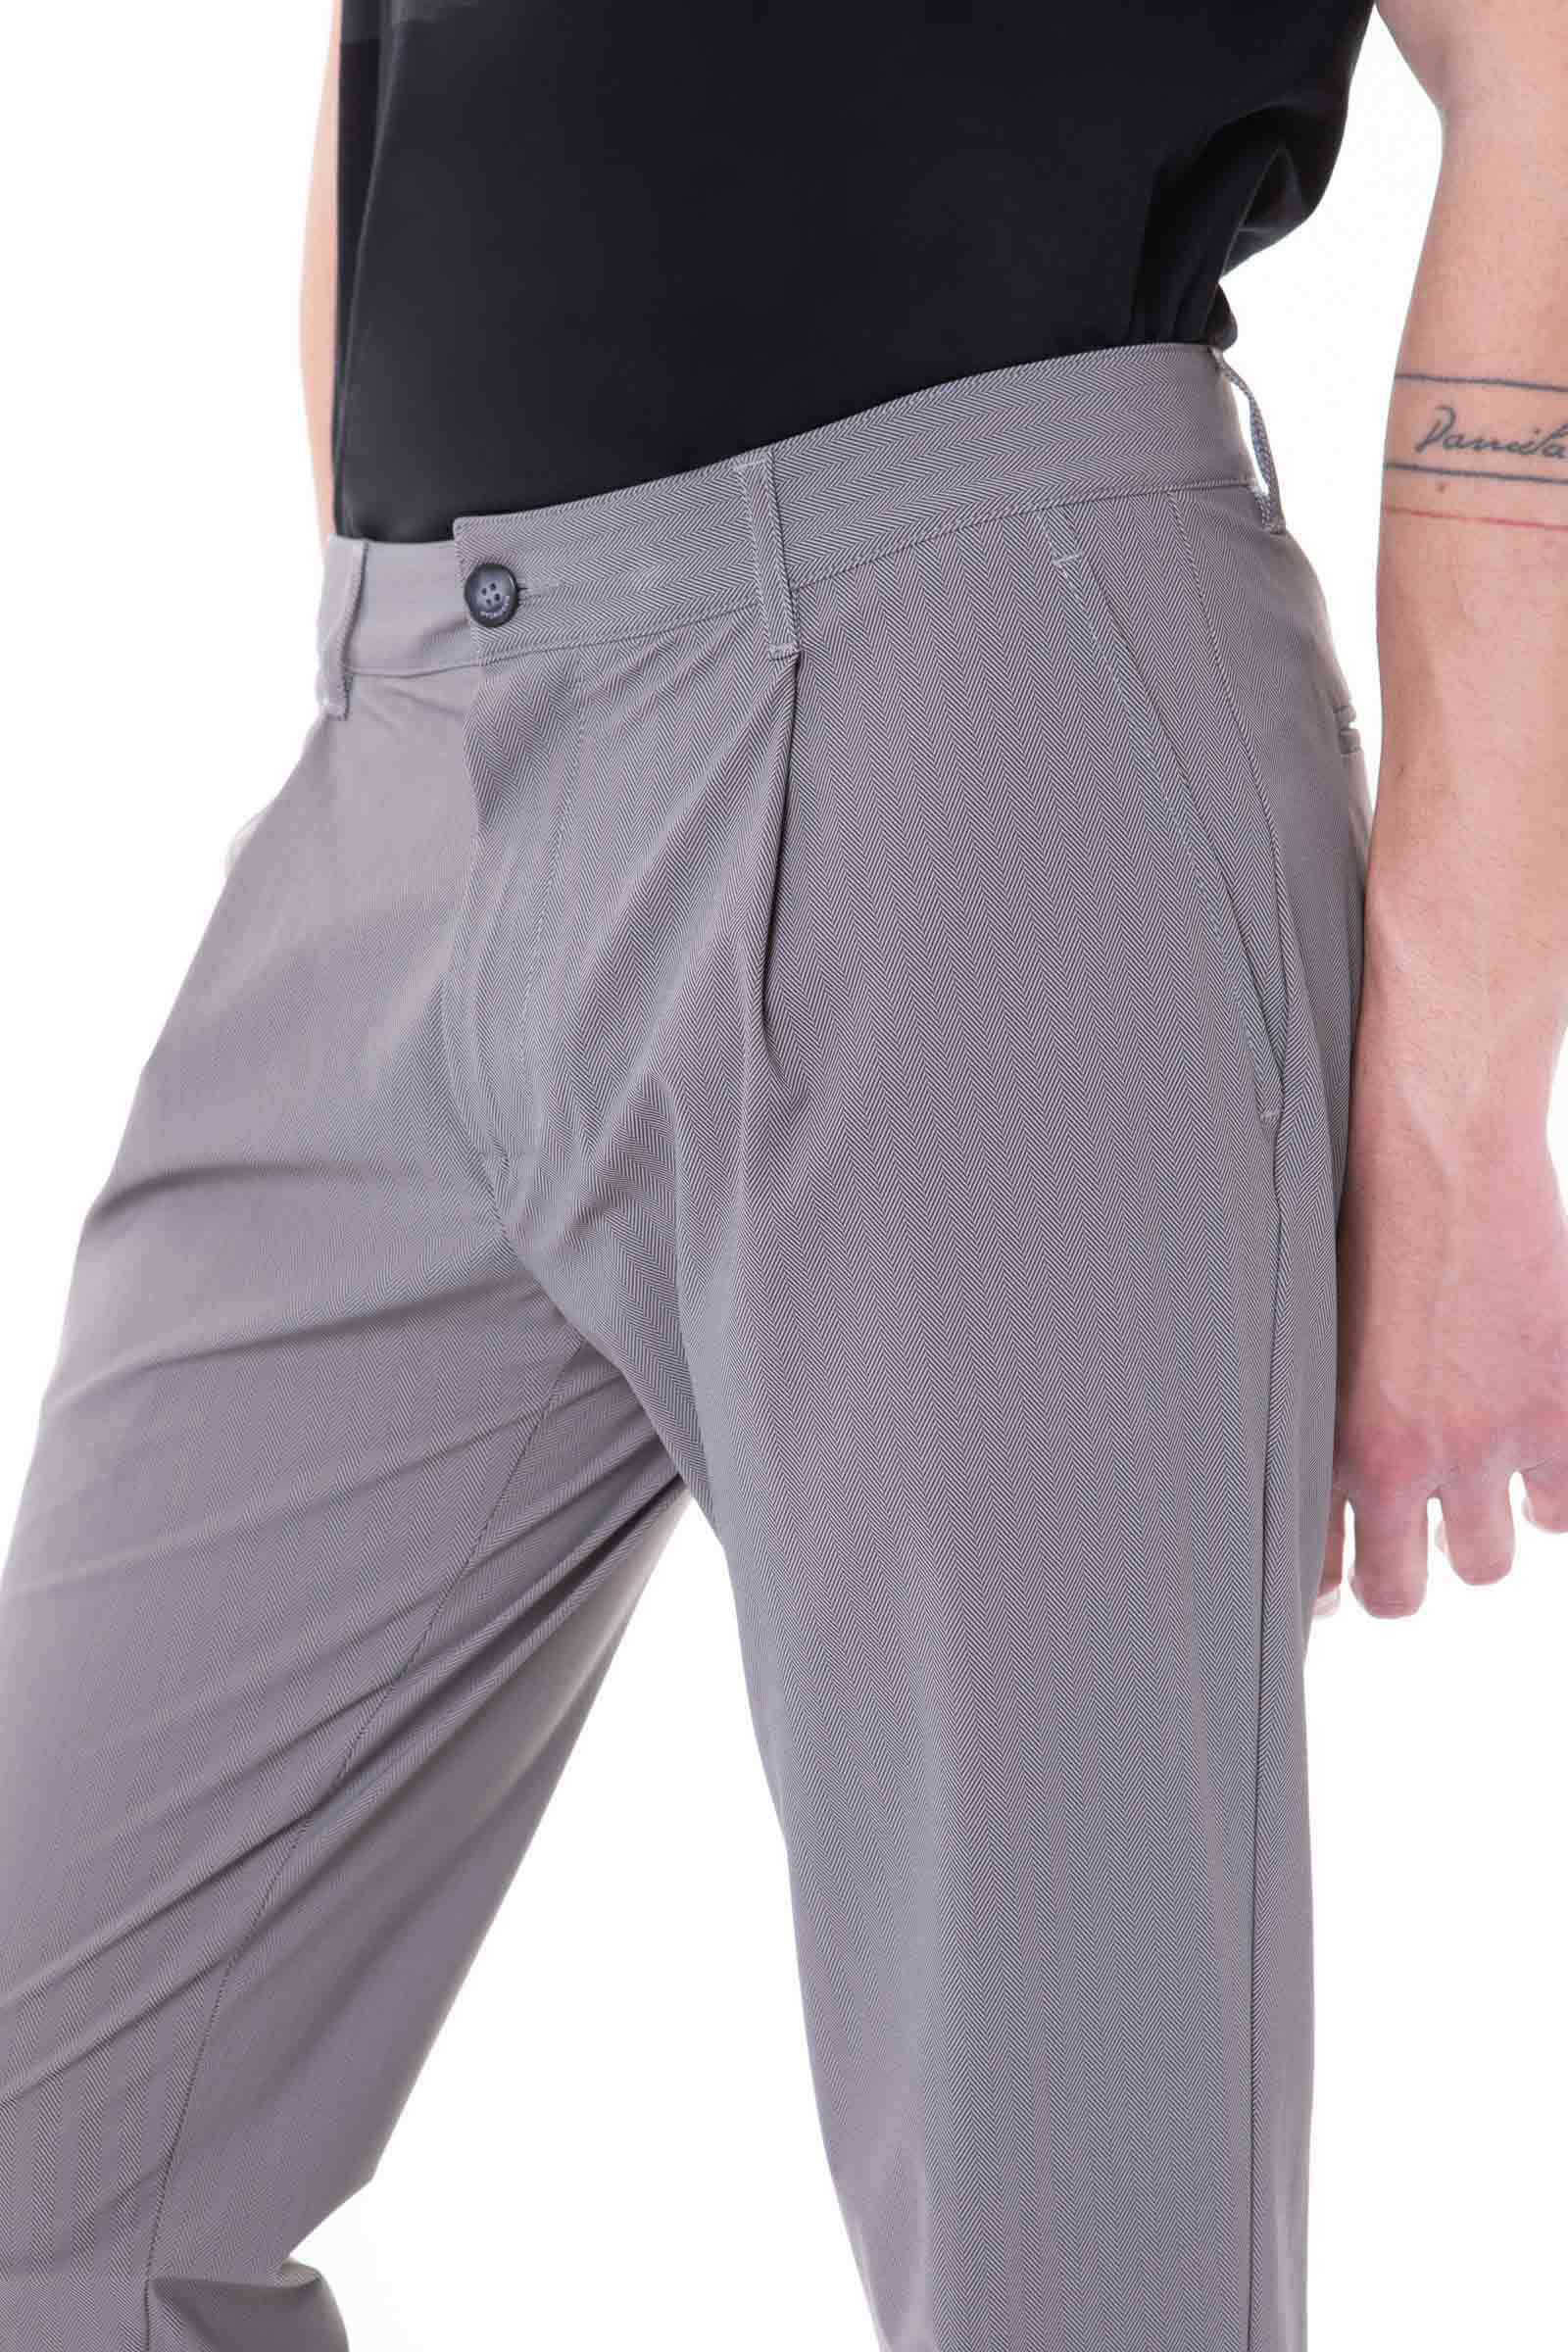 CLASSIC PANTS - Outlet Hydrogen - Luxury Sportwear